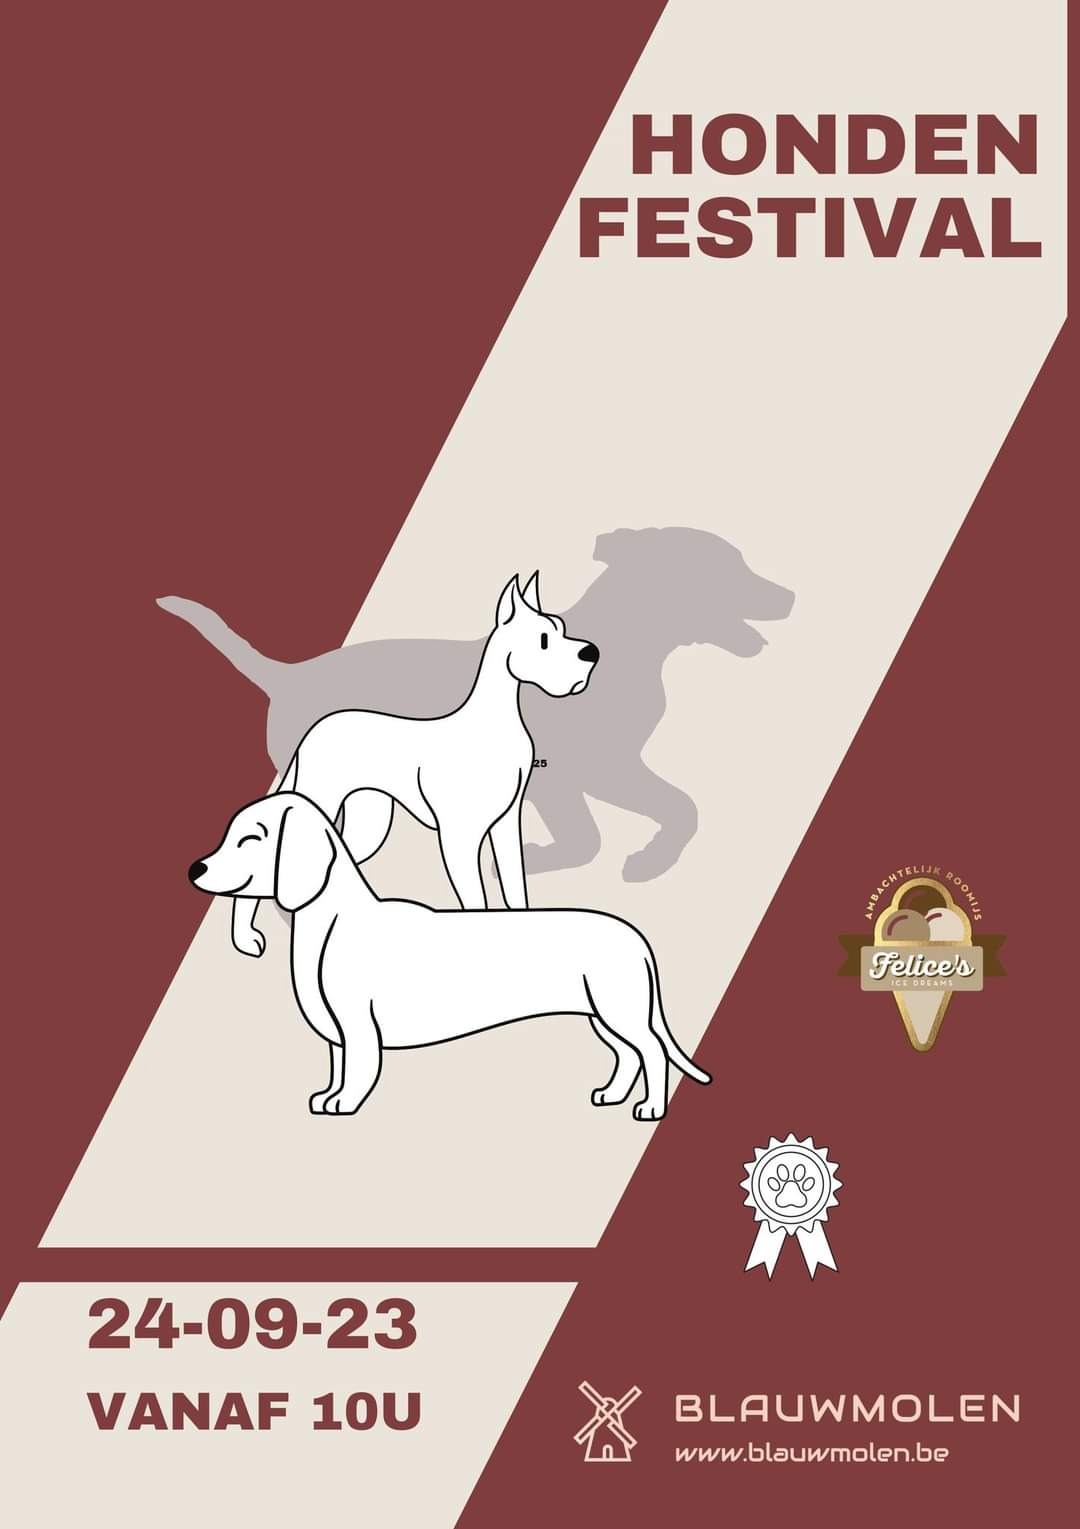 Hondenfestival